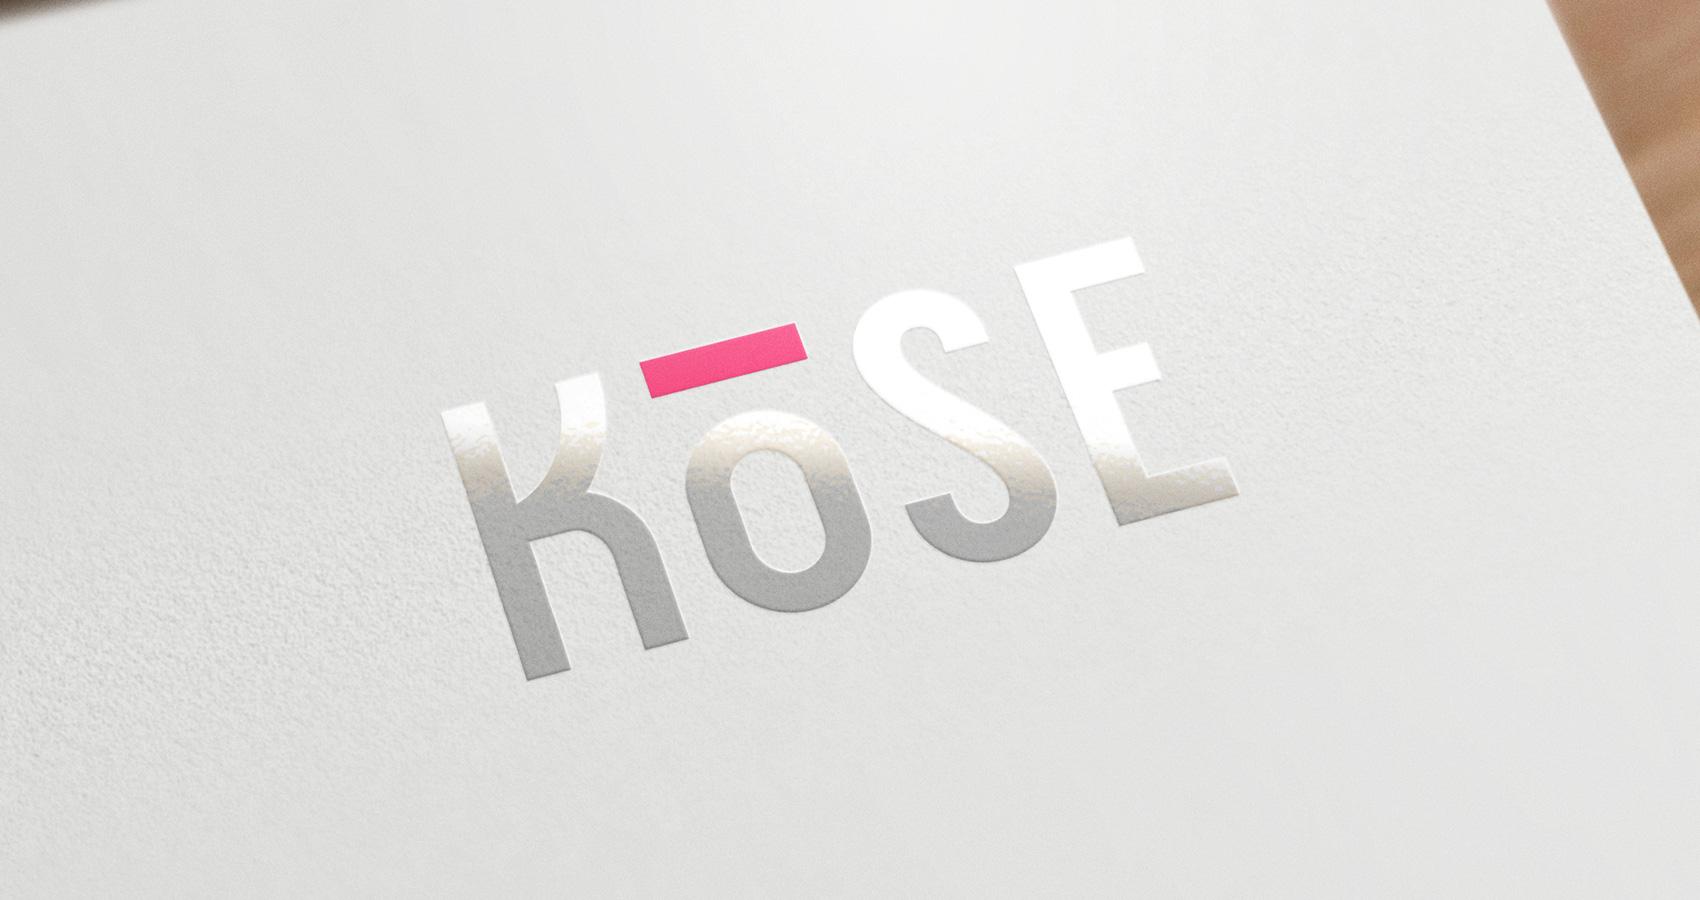 Kose Logo - Kose Logo & Identity Design – 5IVE